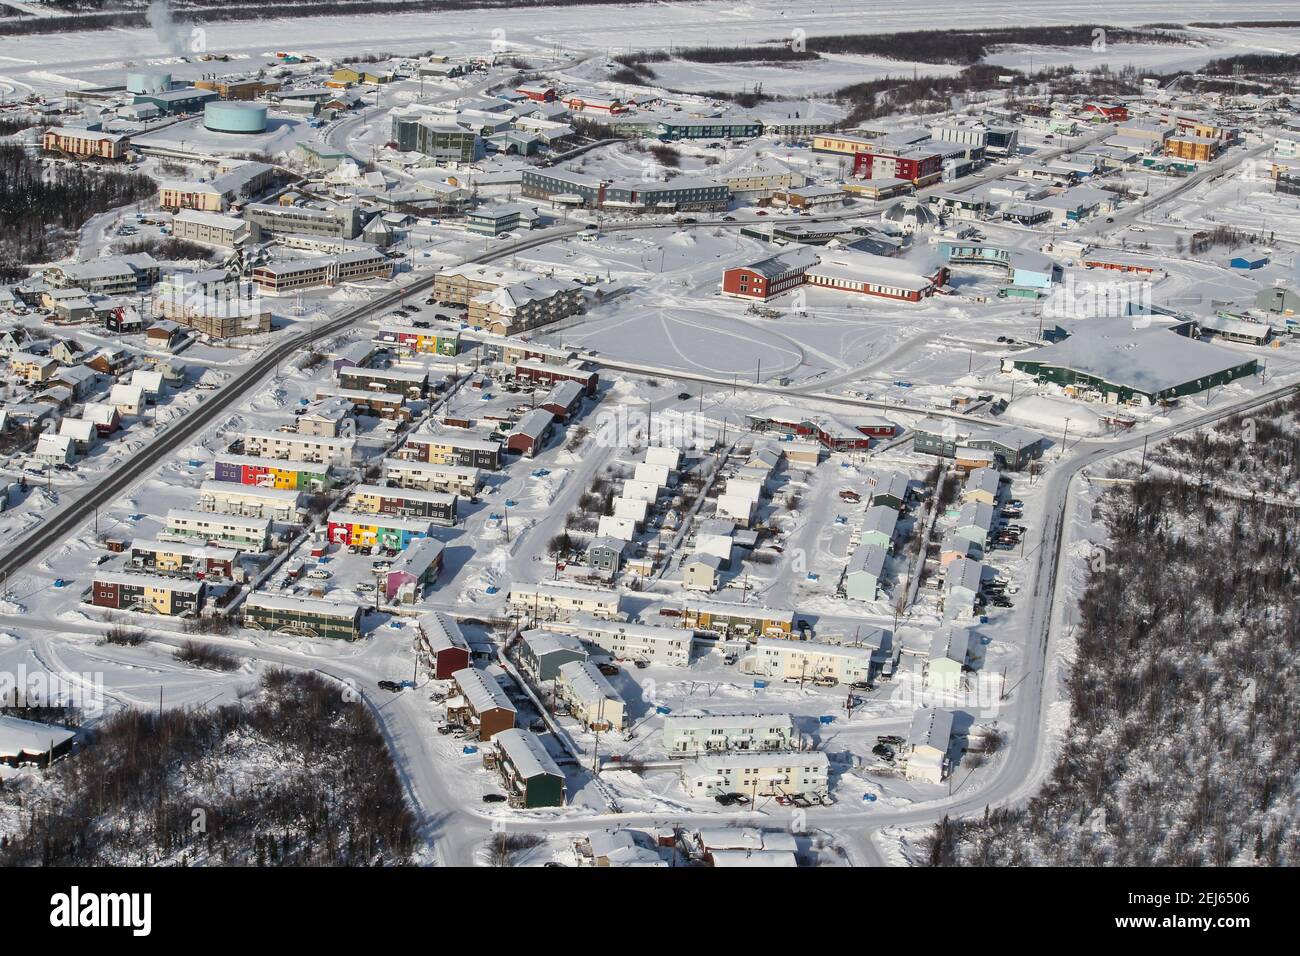 Vue aérienne en hiver des bâtiments de la ville d'Inuvik, dans les Territoires du Nord-Ouest, dans le delta de Beaufort, dans l'ouest de l'Arctique canadien. Banque D'Images